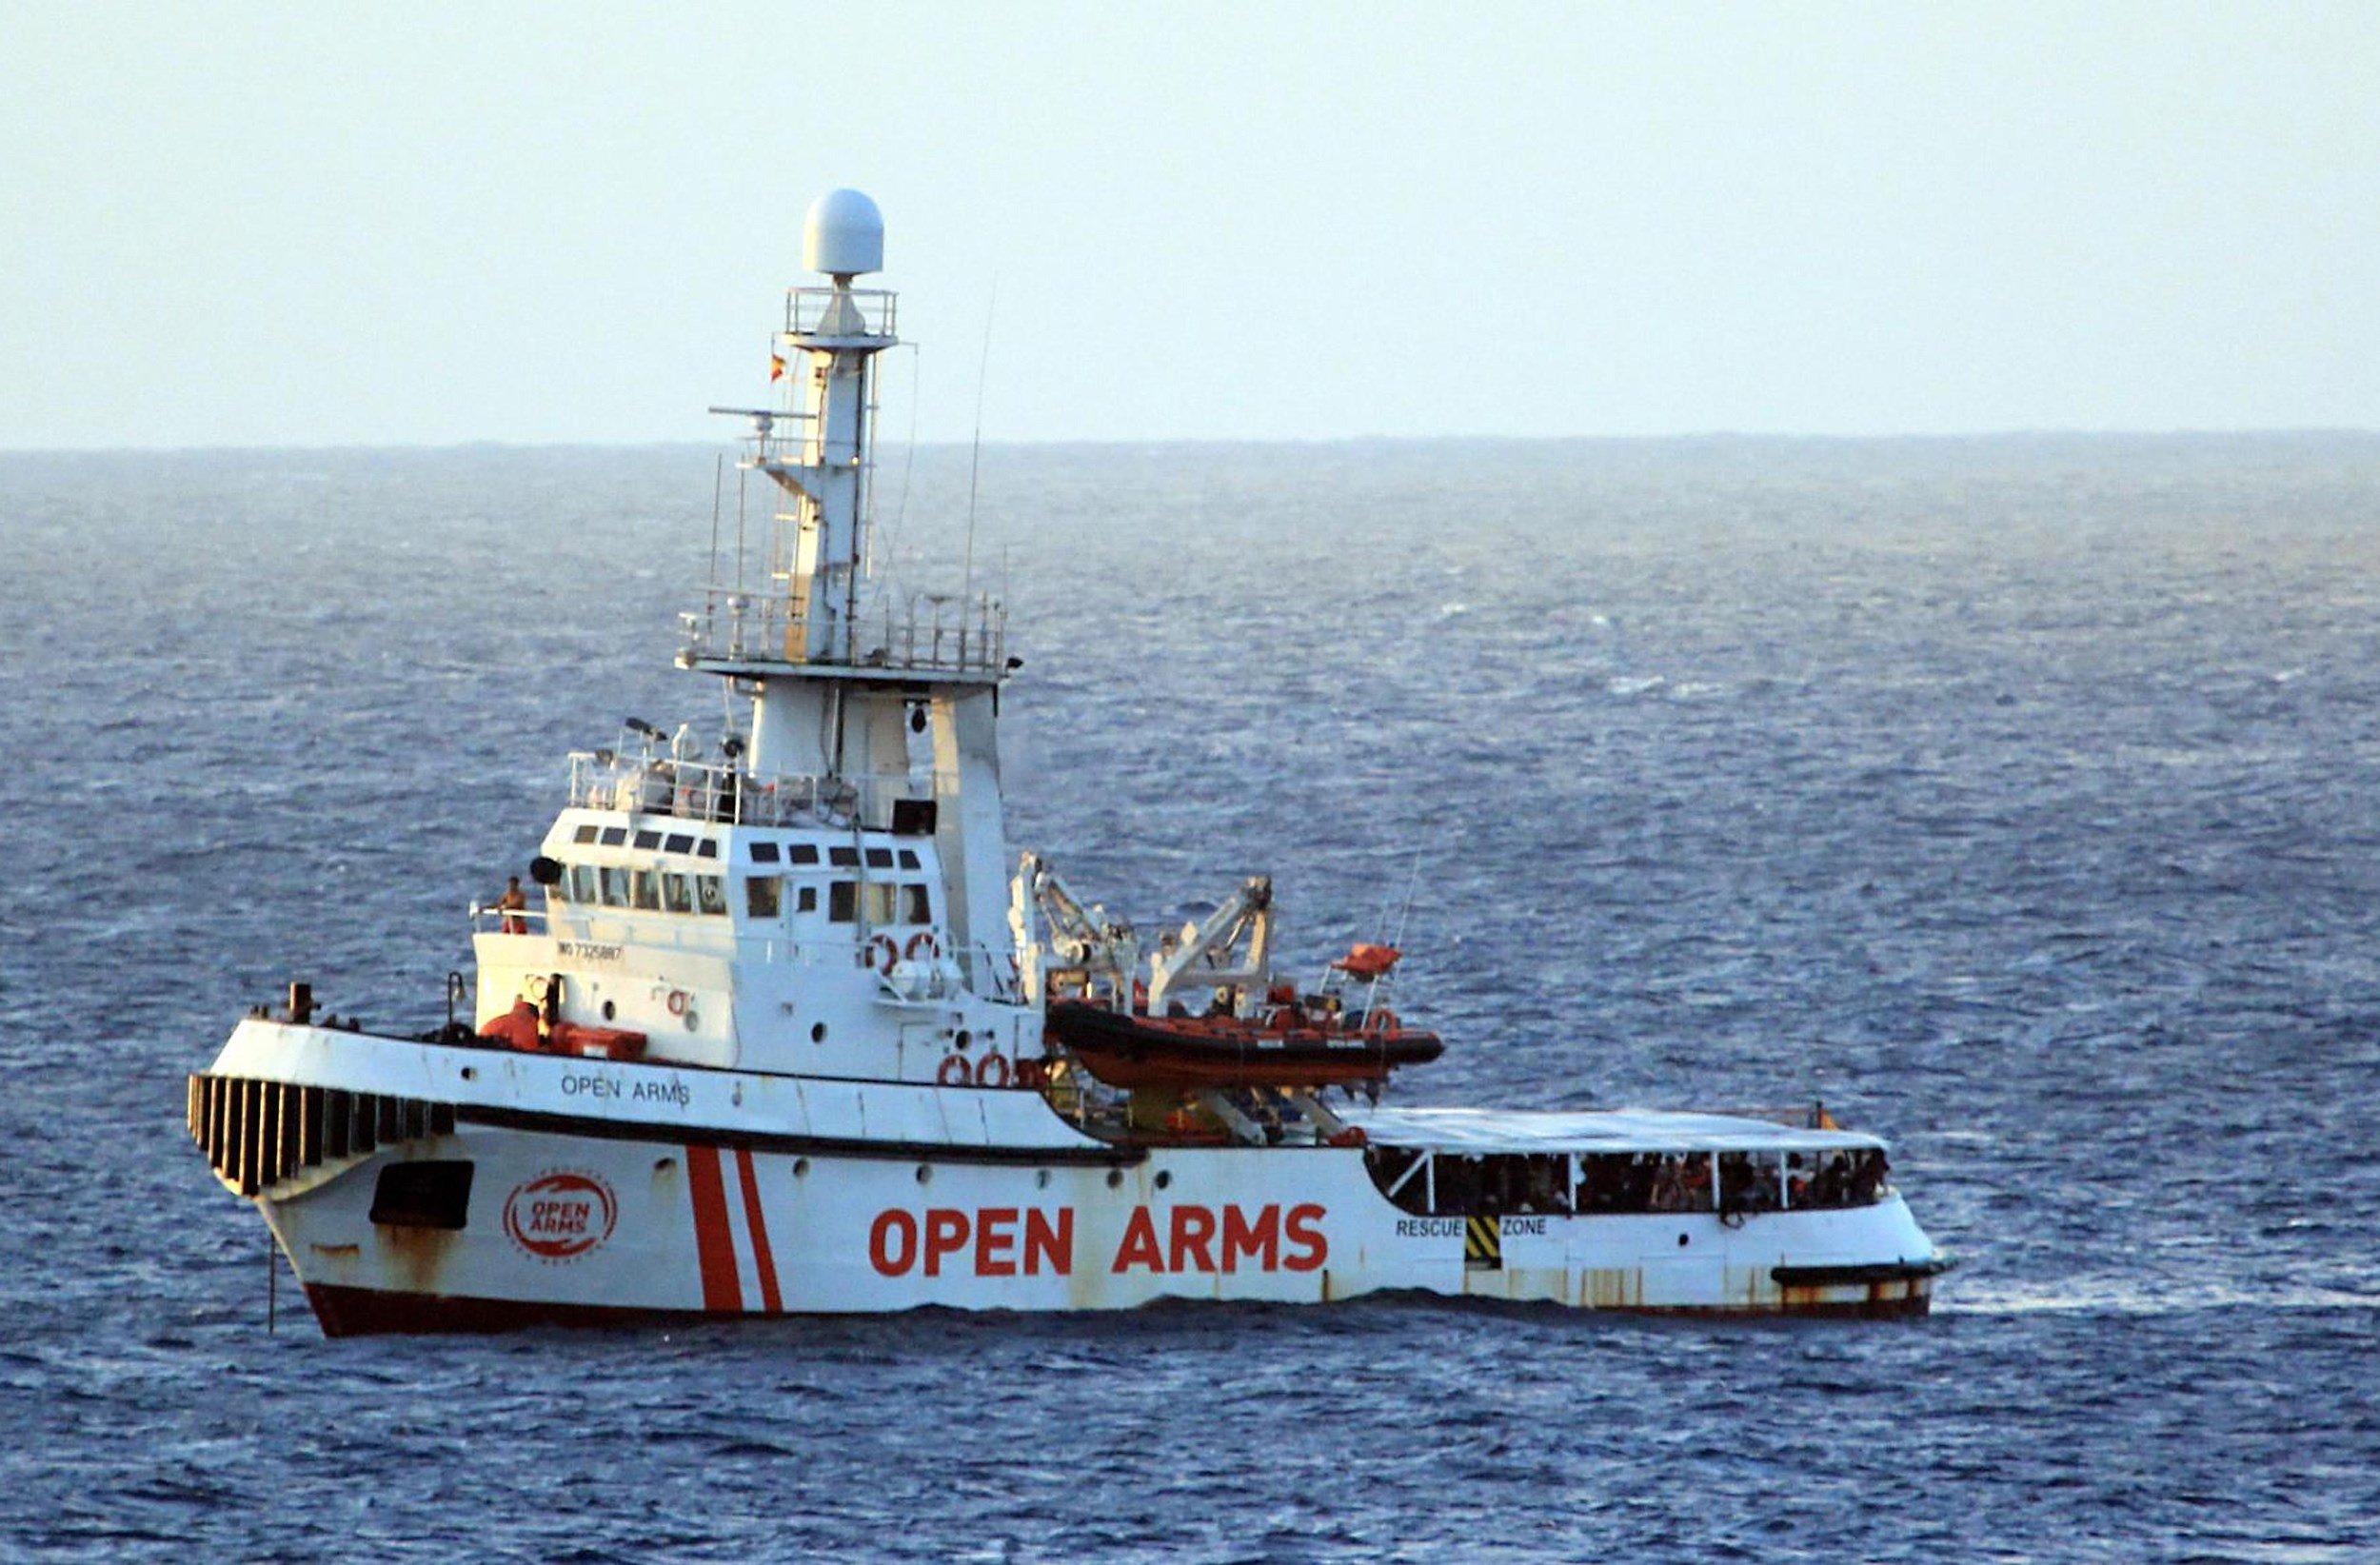 La Guardia Costera italiana detecta "anomalías graves" en el Open Arms y lo inmoviliza